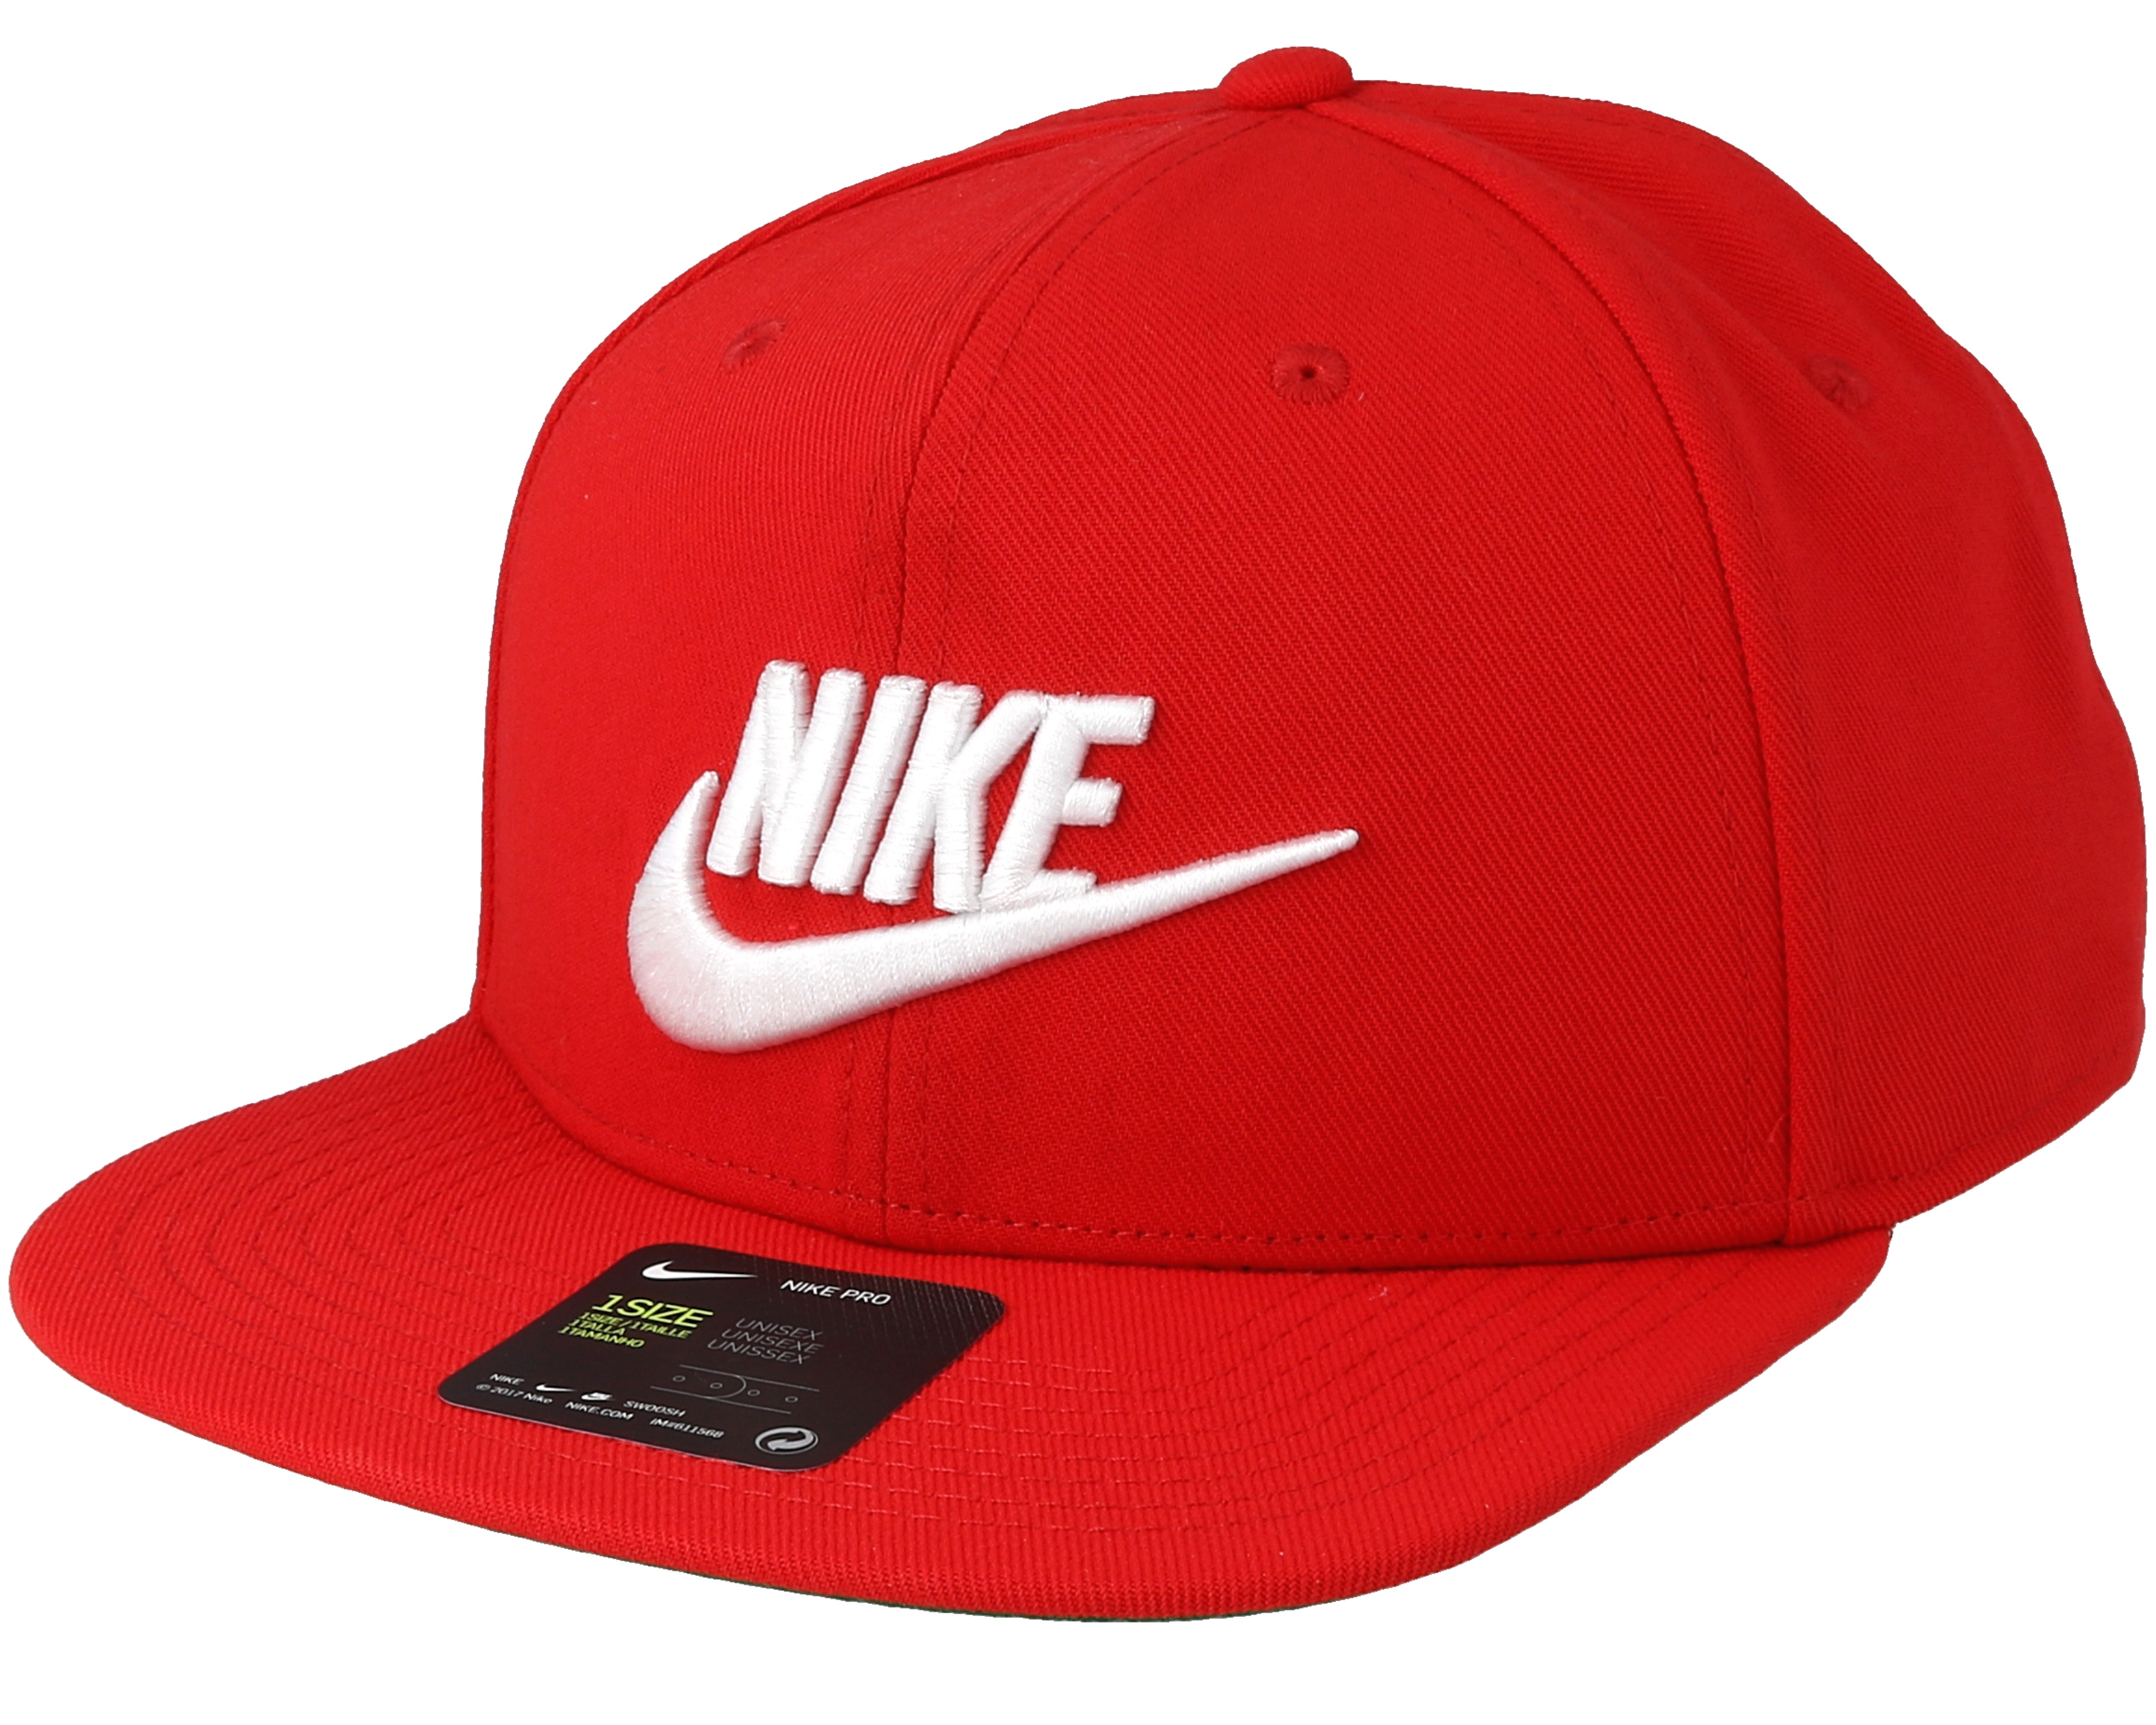 Mens Futura Pro Red Snapback - Nike - casquette